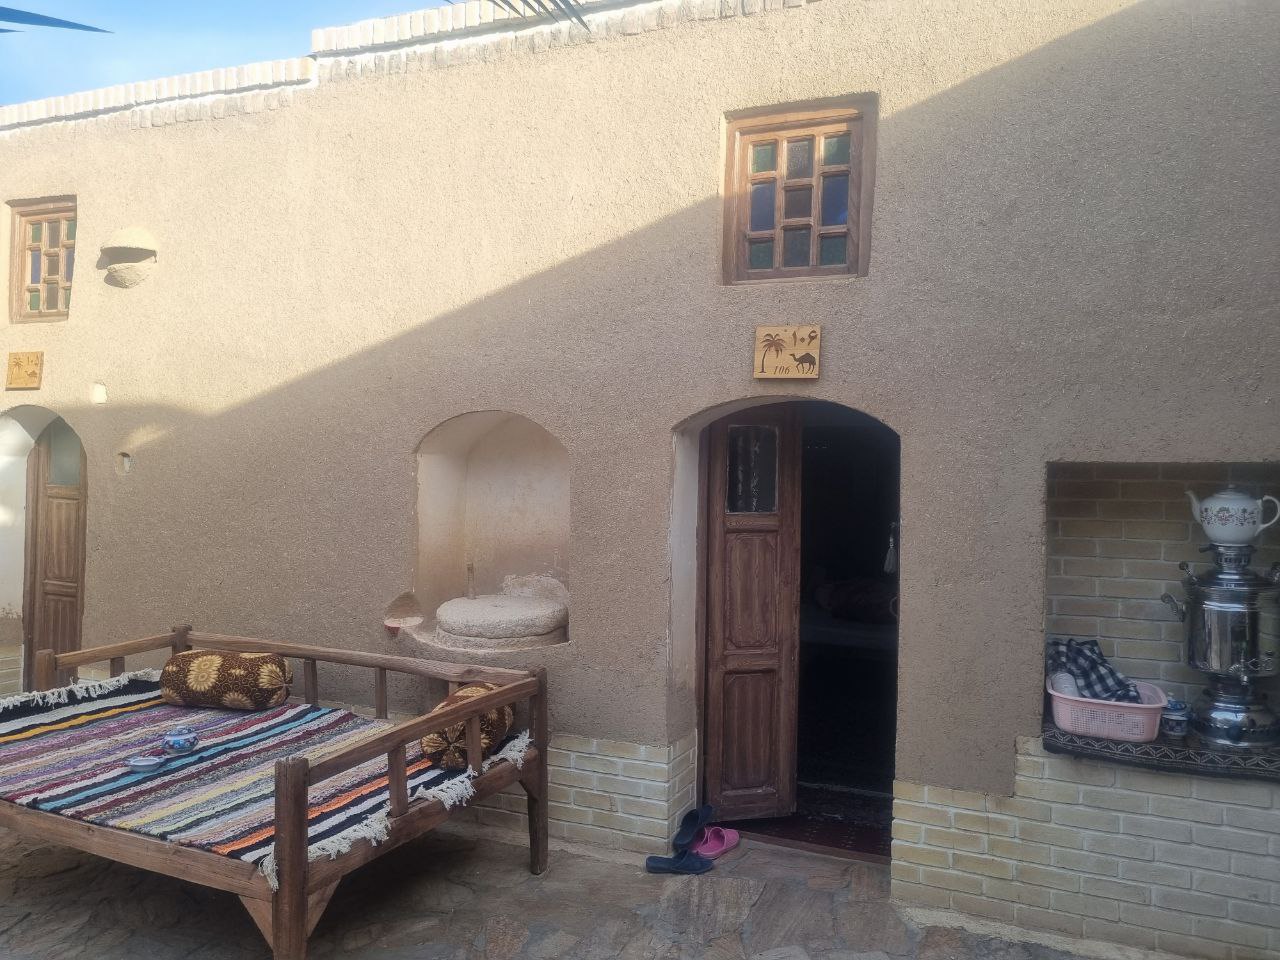 اقامتگاه بومگردی در کویر مصر